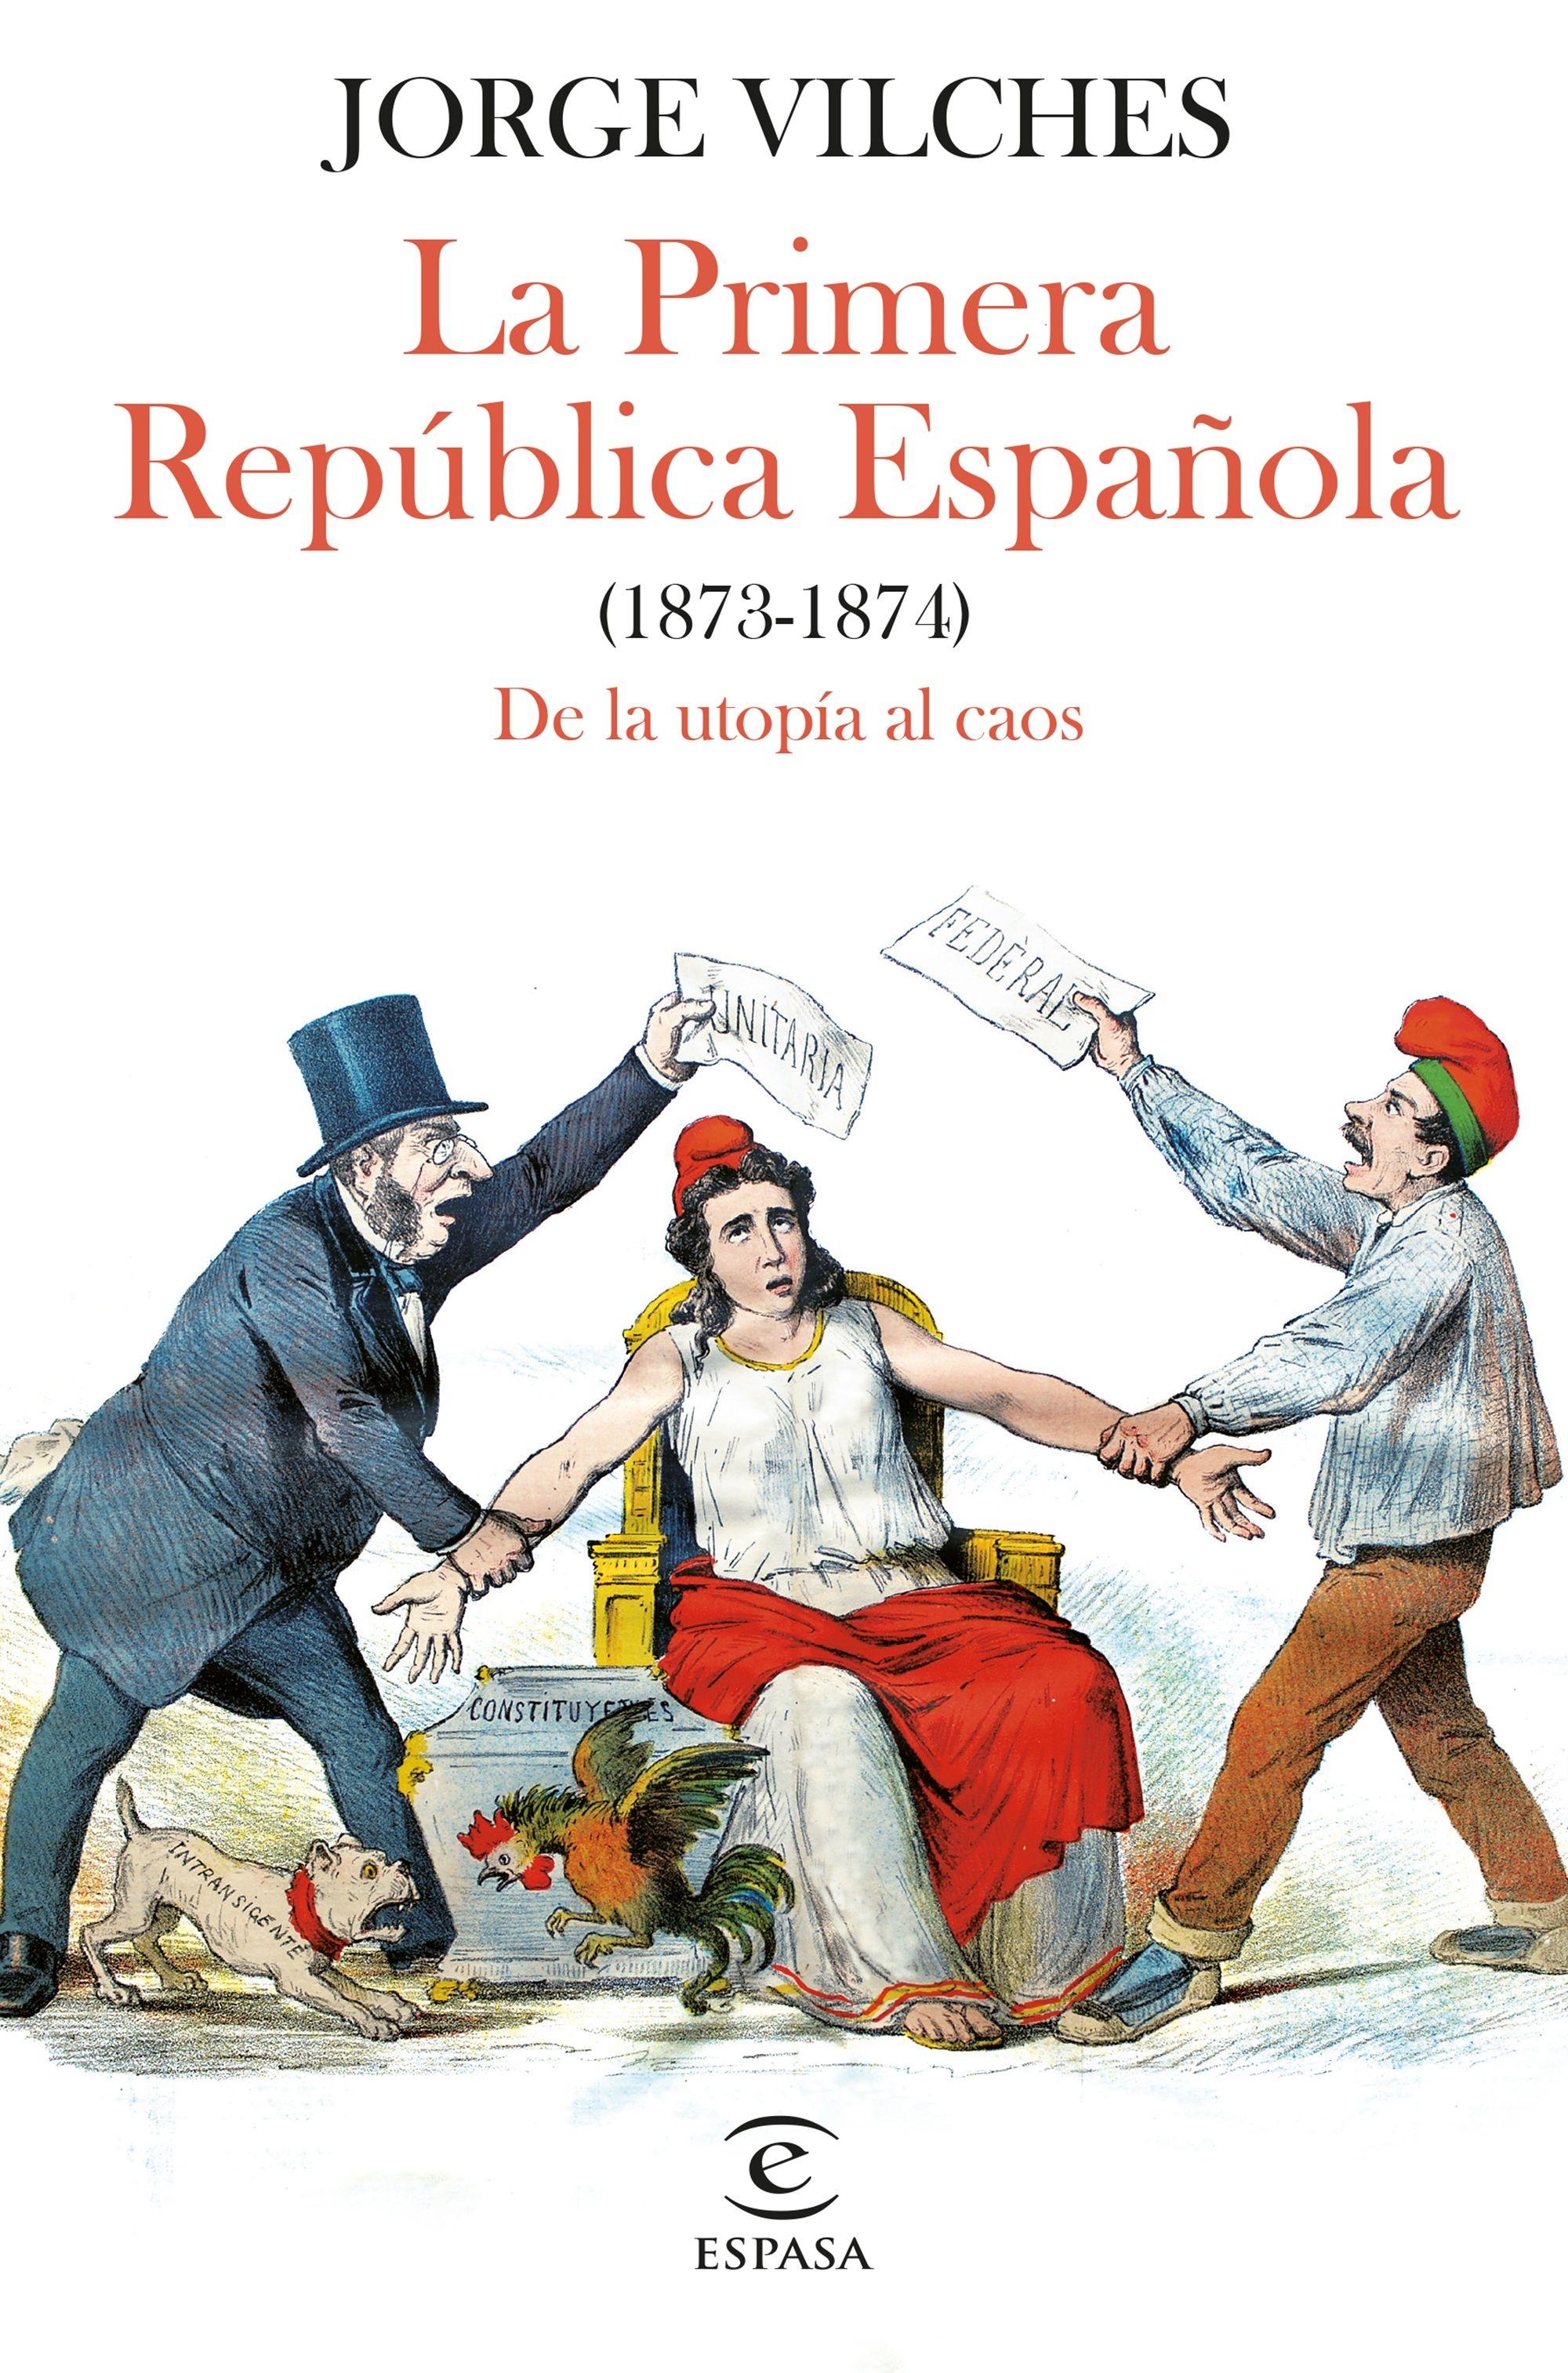 Primera República Española (1873-1874) "De la utopía al caos"